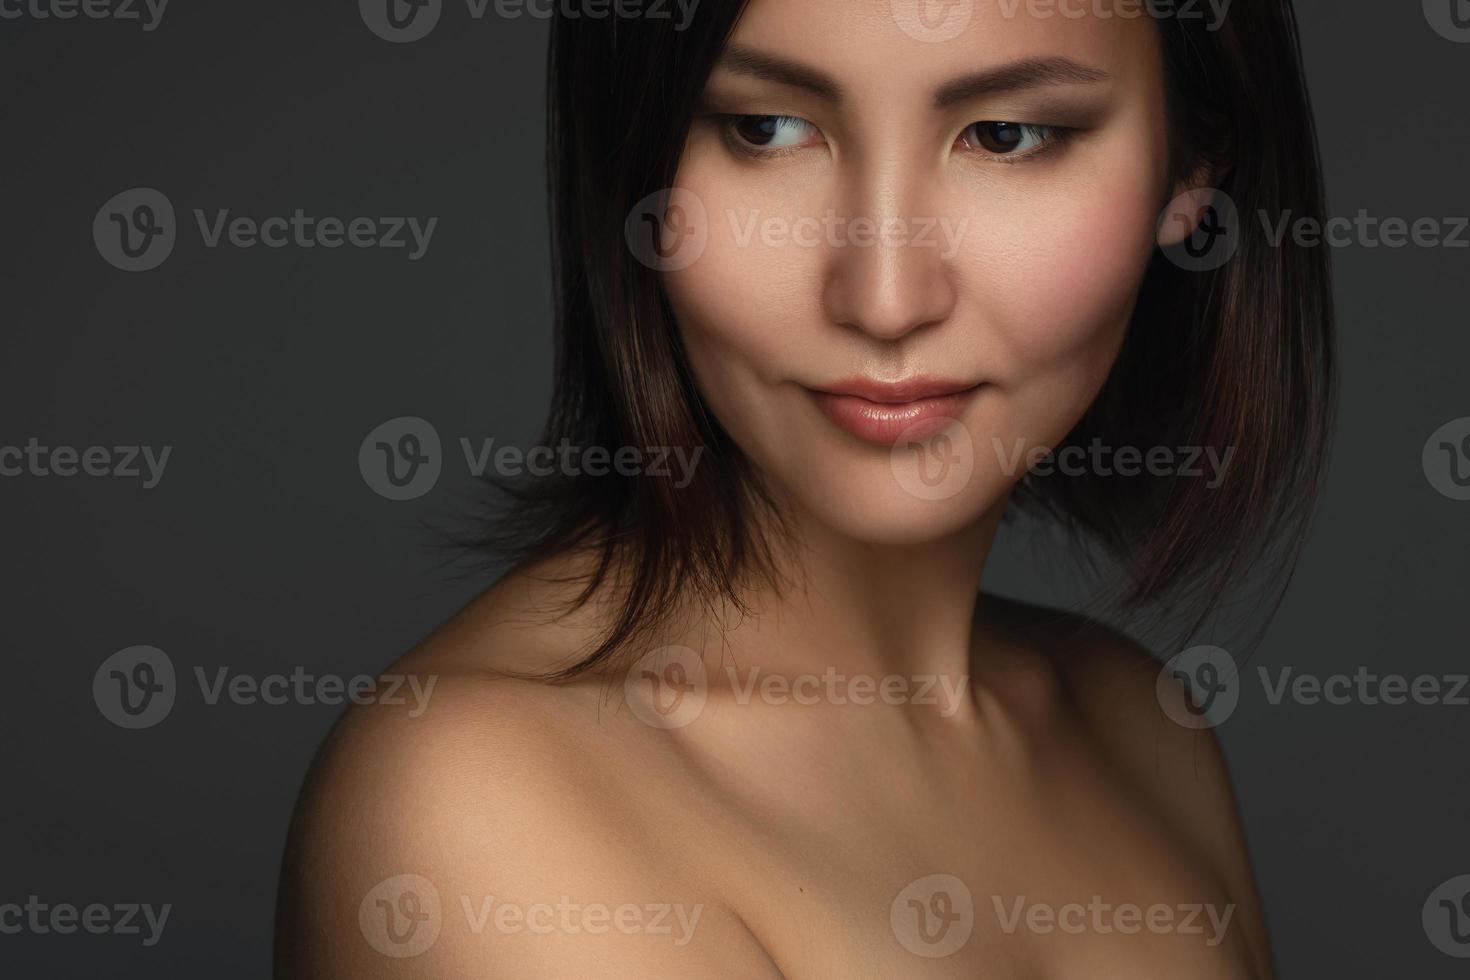 portret van jong en mooi Aziatisch vrouw foto